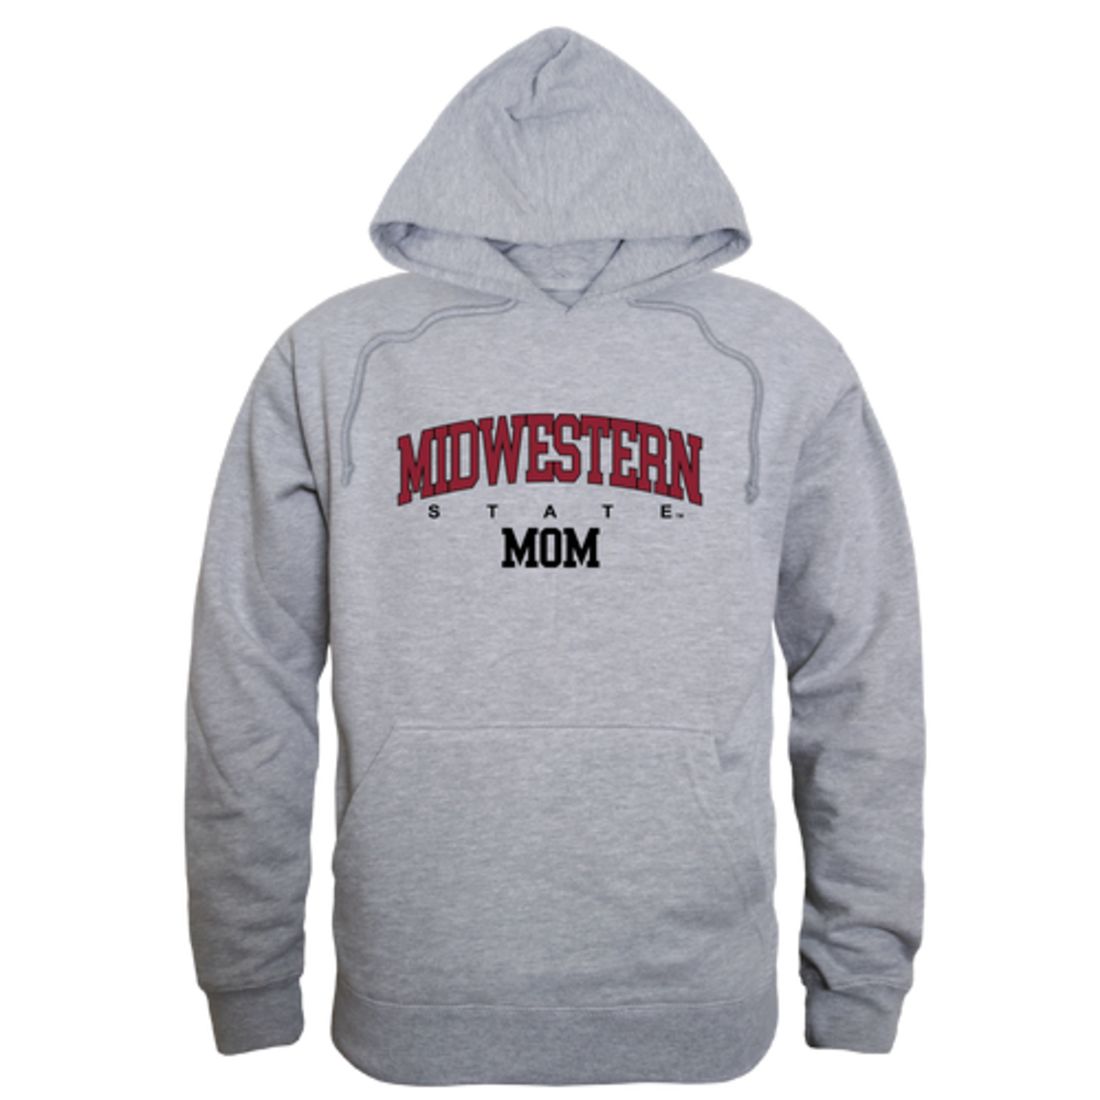 Midwestern State University Mustangs Mom Fleece Hoodie Sweatshirts